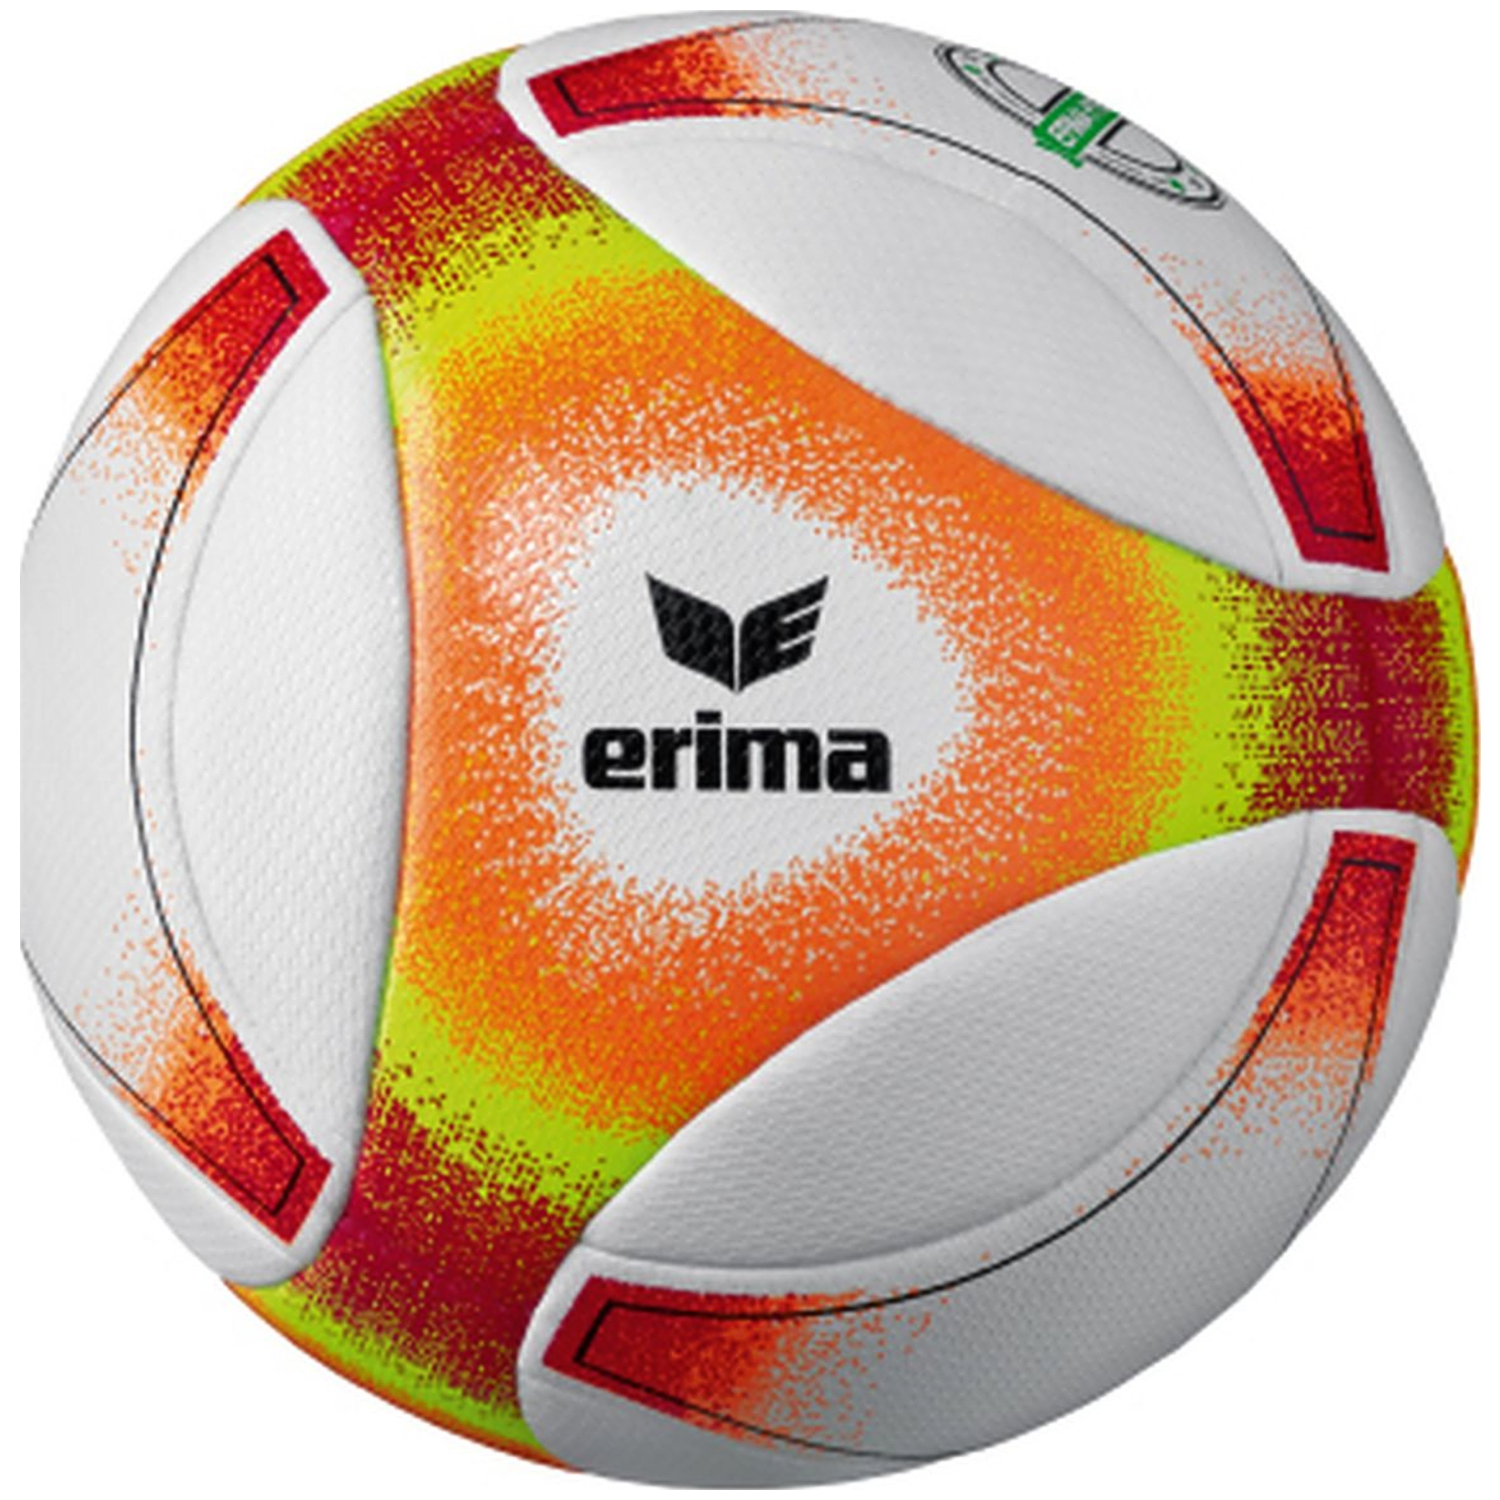 Erima Erima Hybrid Futsal Outdoor-Fußball